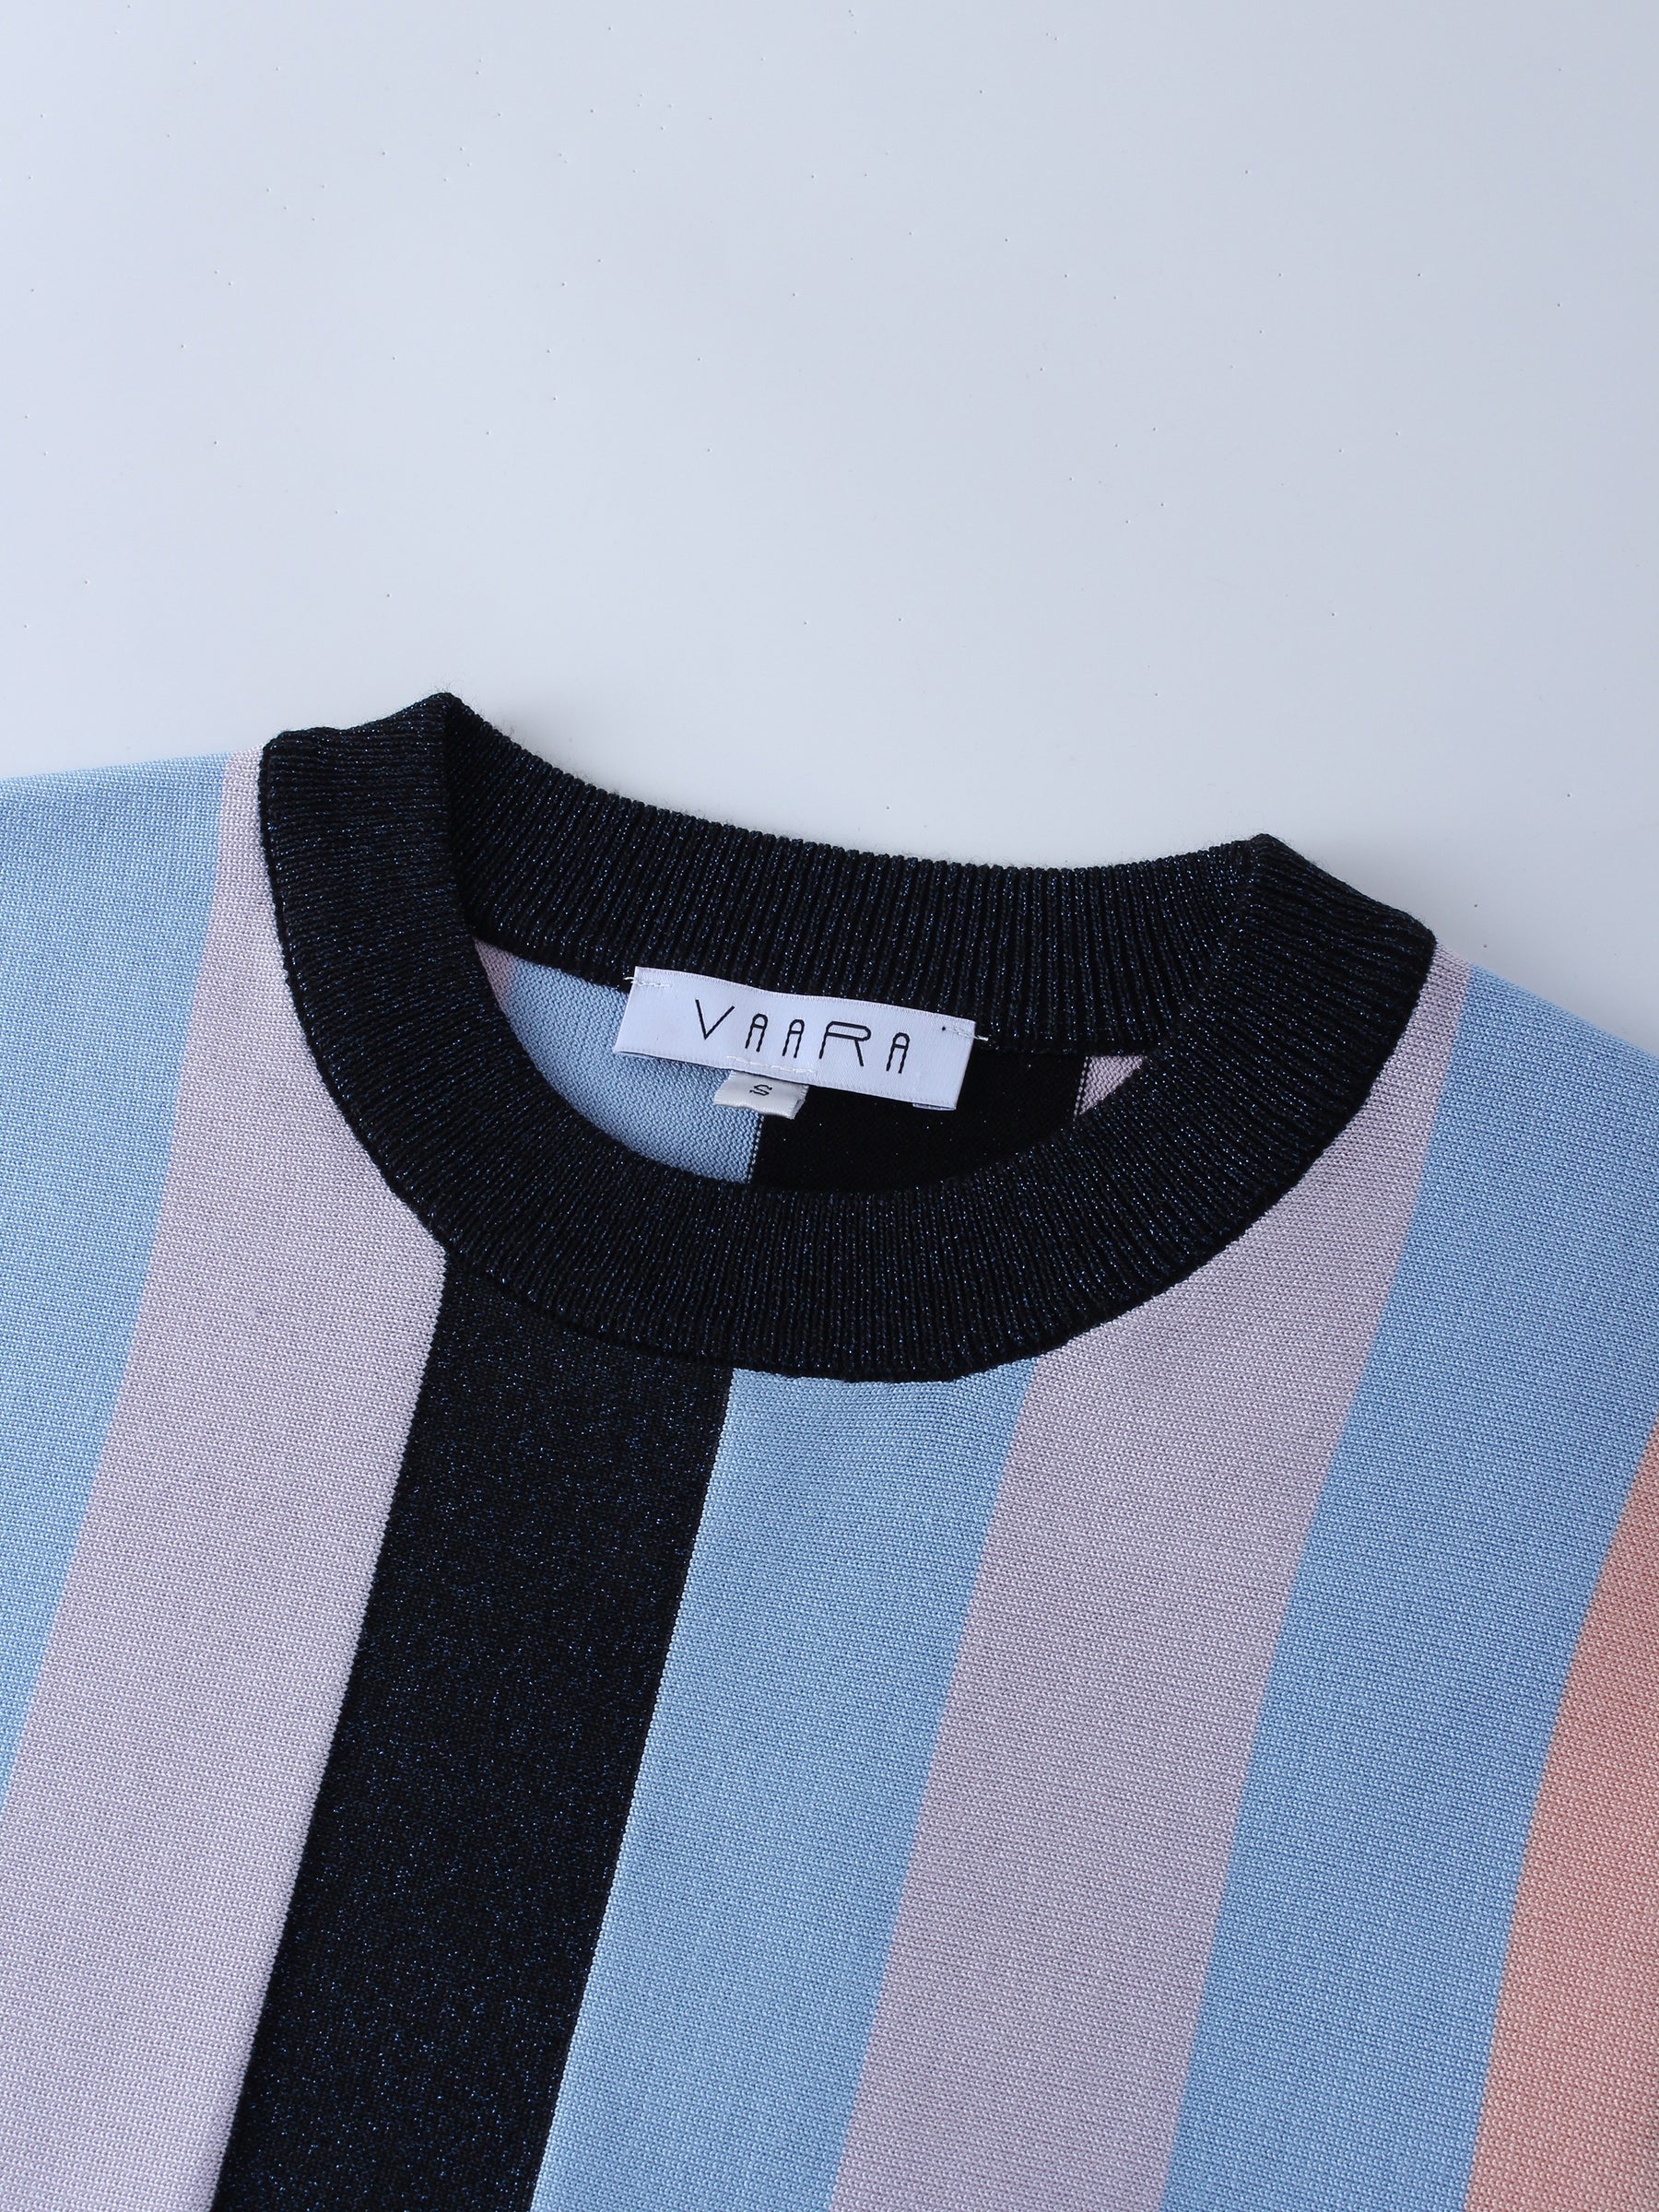 Striped Lurex Sweater-Multi